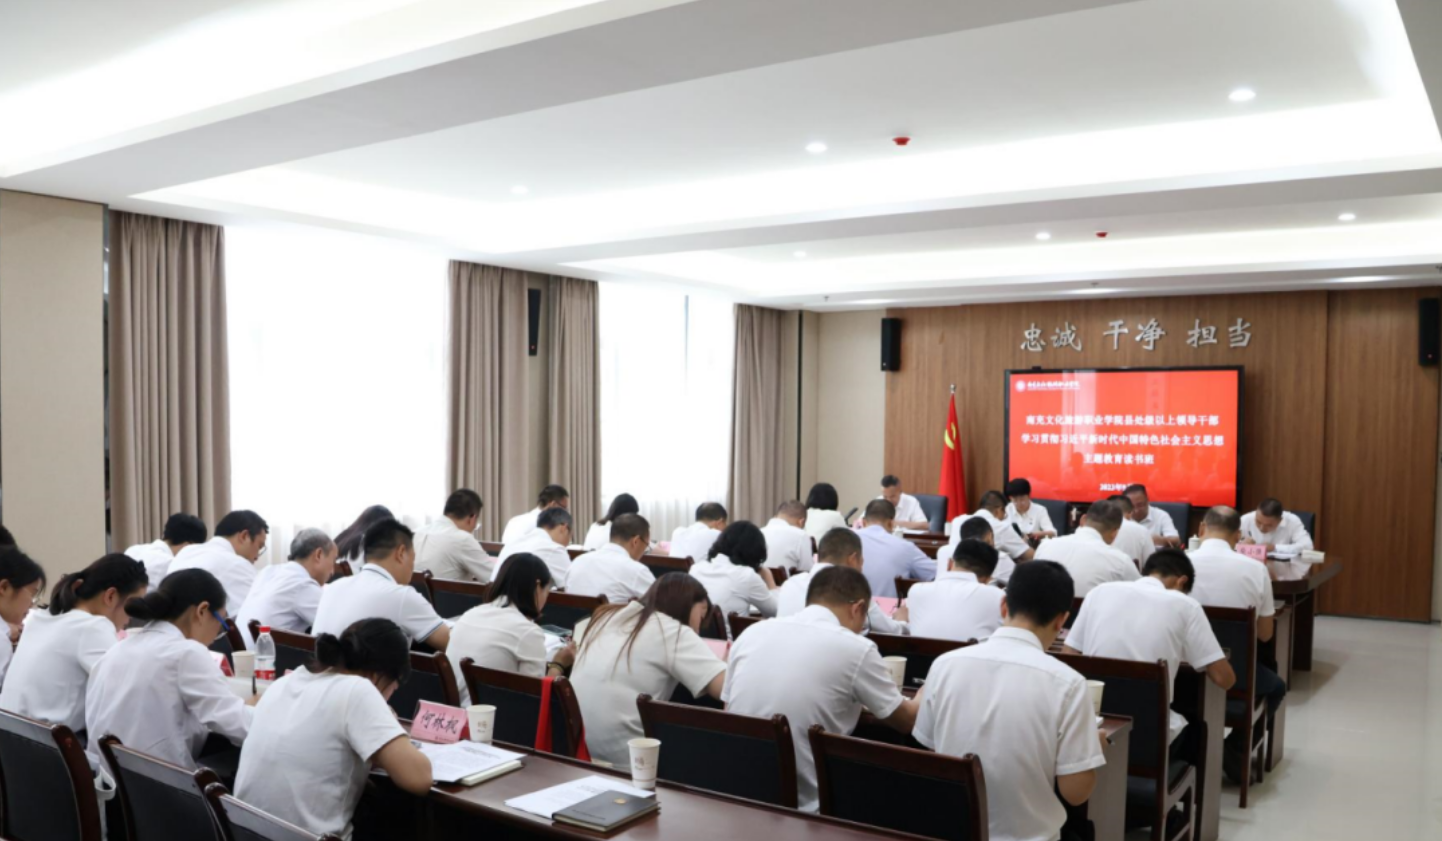 我校举行县处级以上领导干部学习 贯彻习近平新时代中国特色社会主义思想主题教育读书班开班式